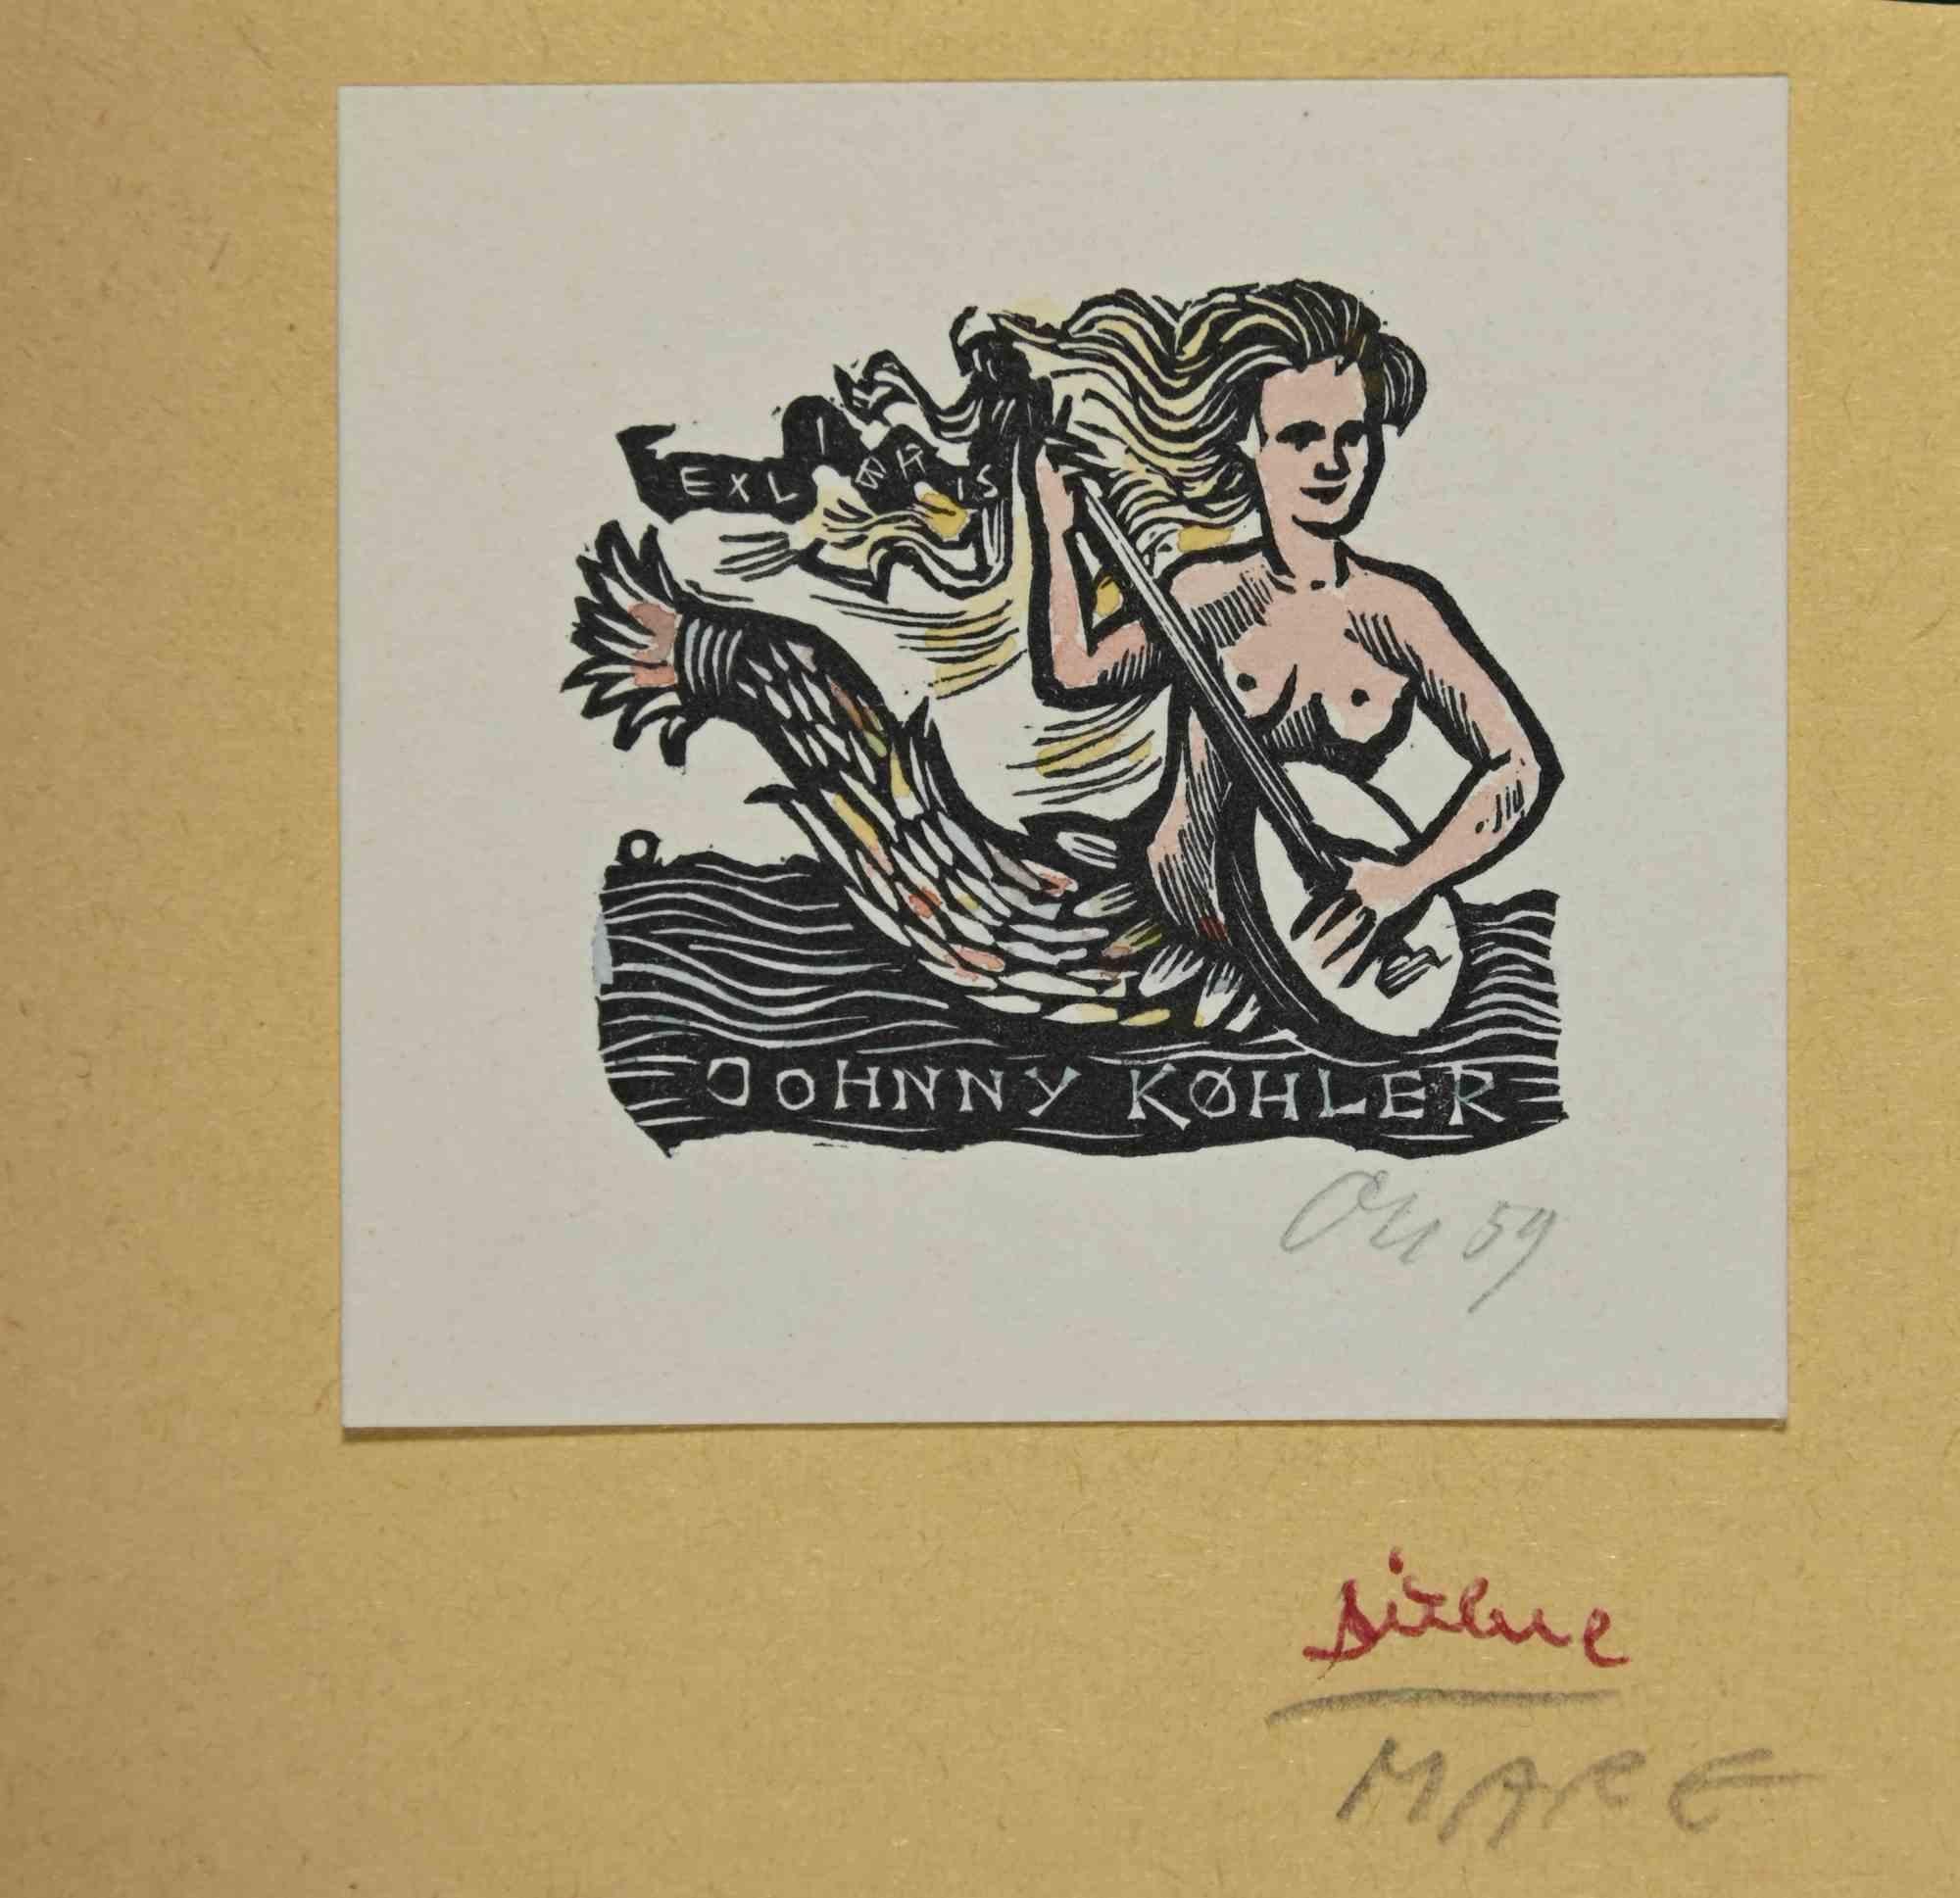 Ex-Libris - Johnny Køhler ist ein Kunstwerk des deutschen Künstlers Herbert Ott aus dem Jahr 1959.

Holzschnitt auf Papier. Handsigniert und datiert am rechten Rand.

Das Werk ist auf farbigen Karton geklebt. Gesamtabmessungen: 9 x 9,5 cm.

Gute